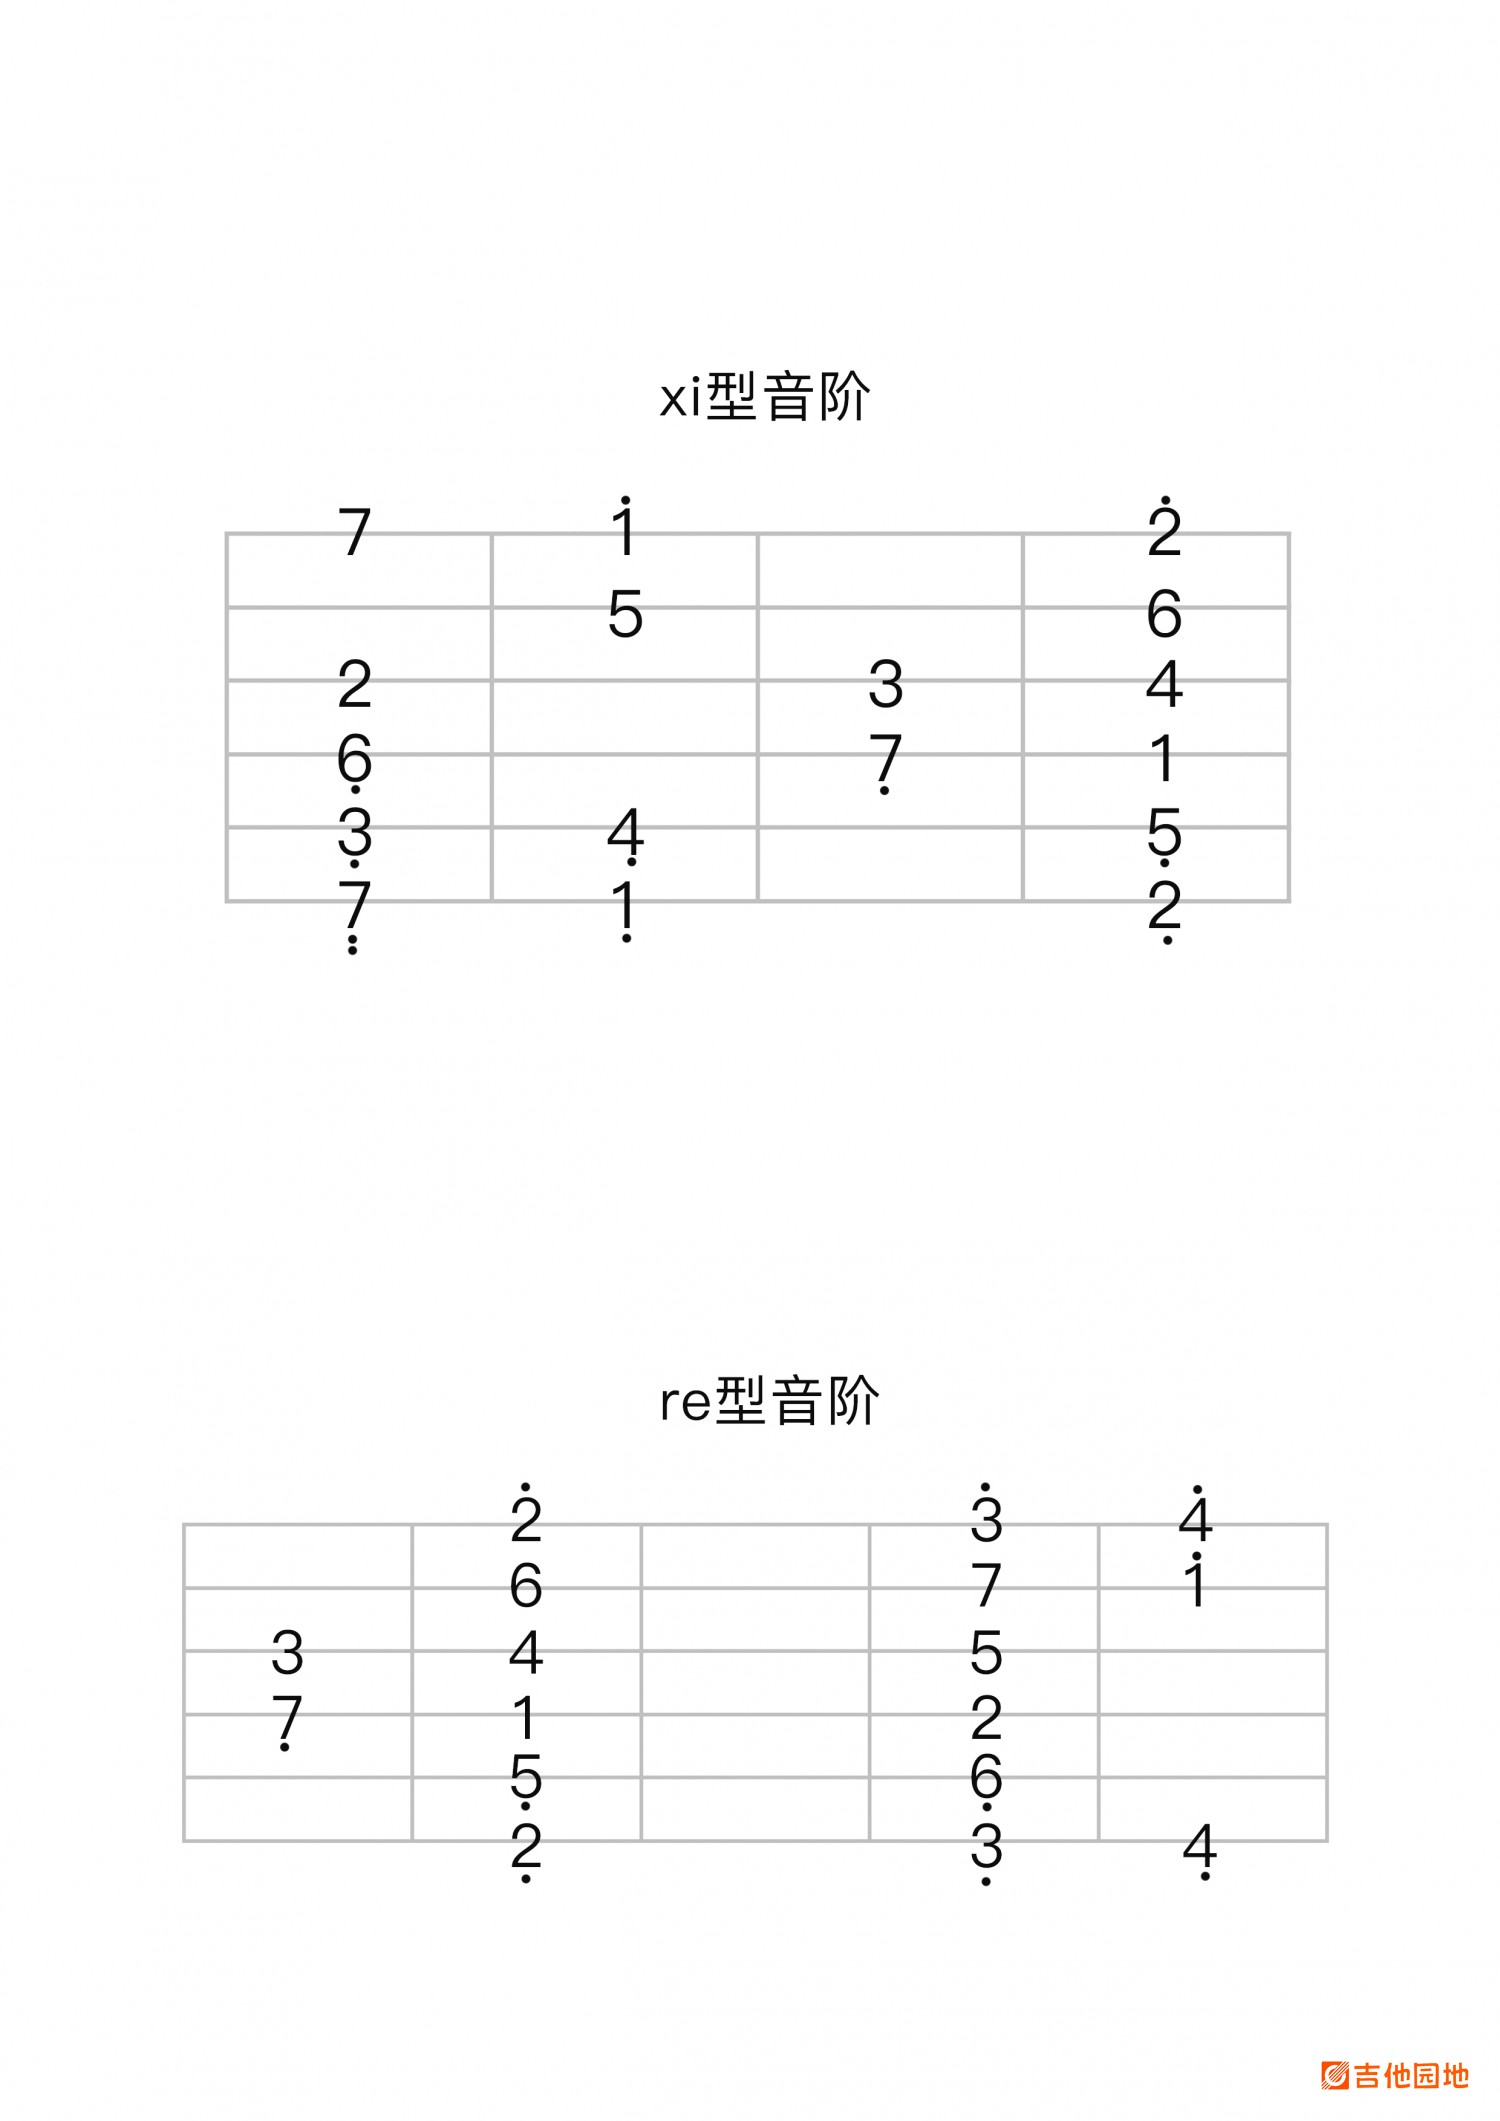 吉他园地菊花台吉他谱(老姚吉他)-3